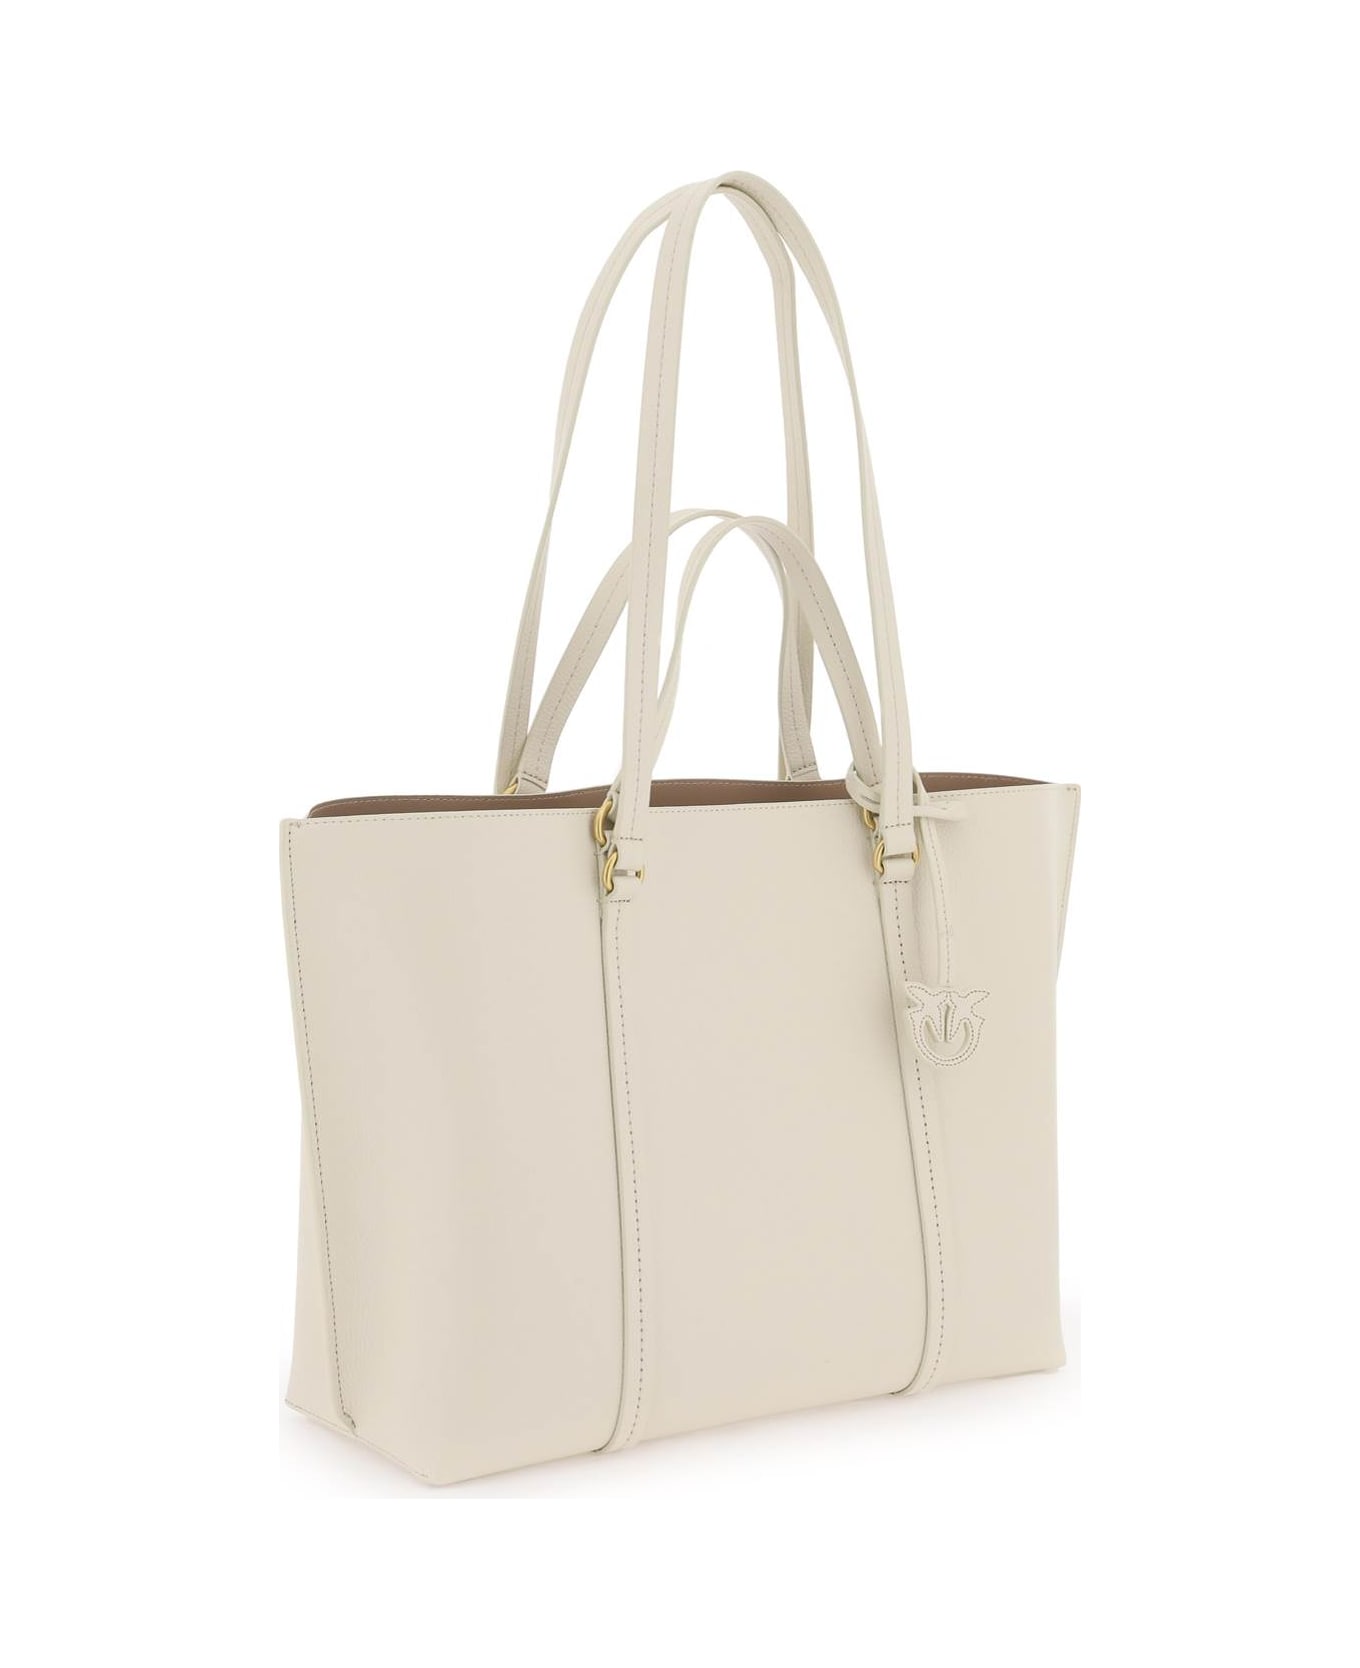 Pinko Shopper Bag - BIANCO SETA ANTIQUE GOLD (White)